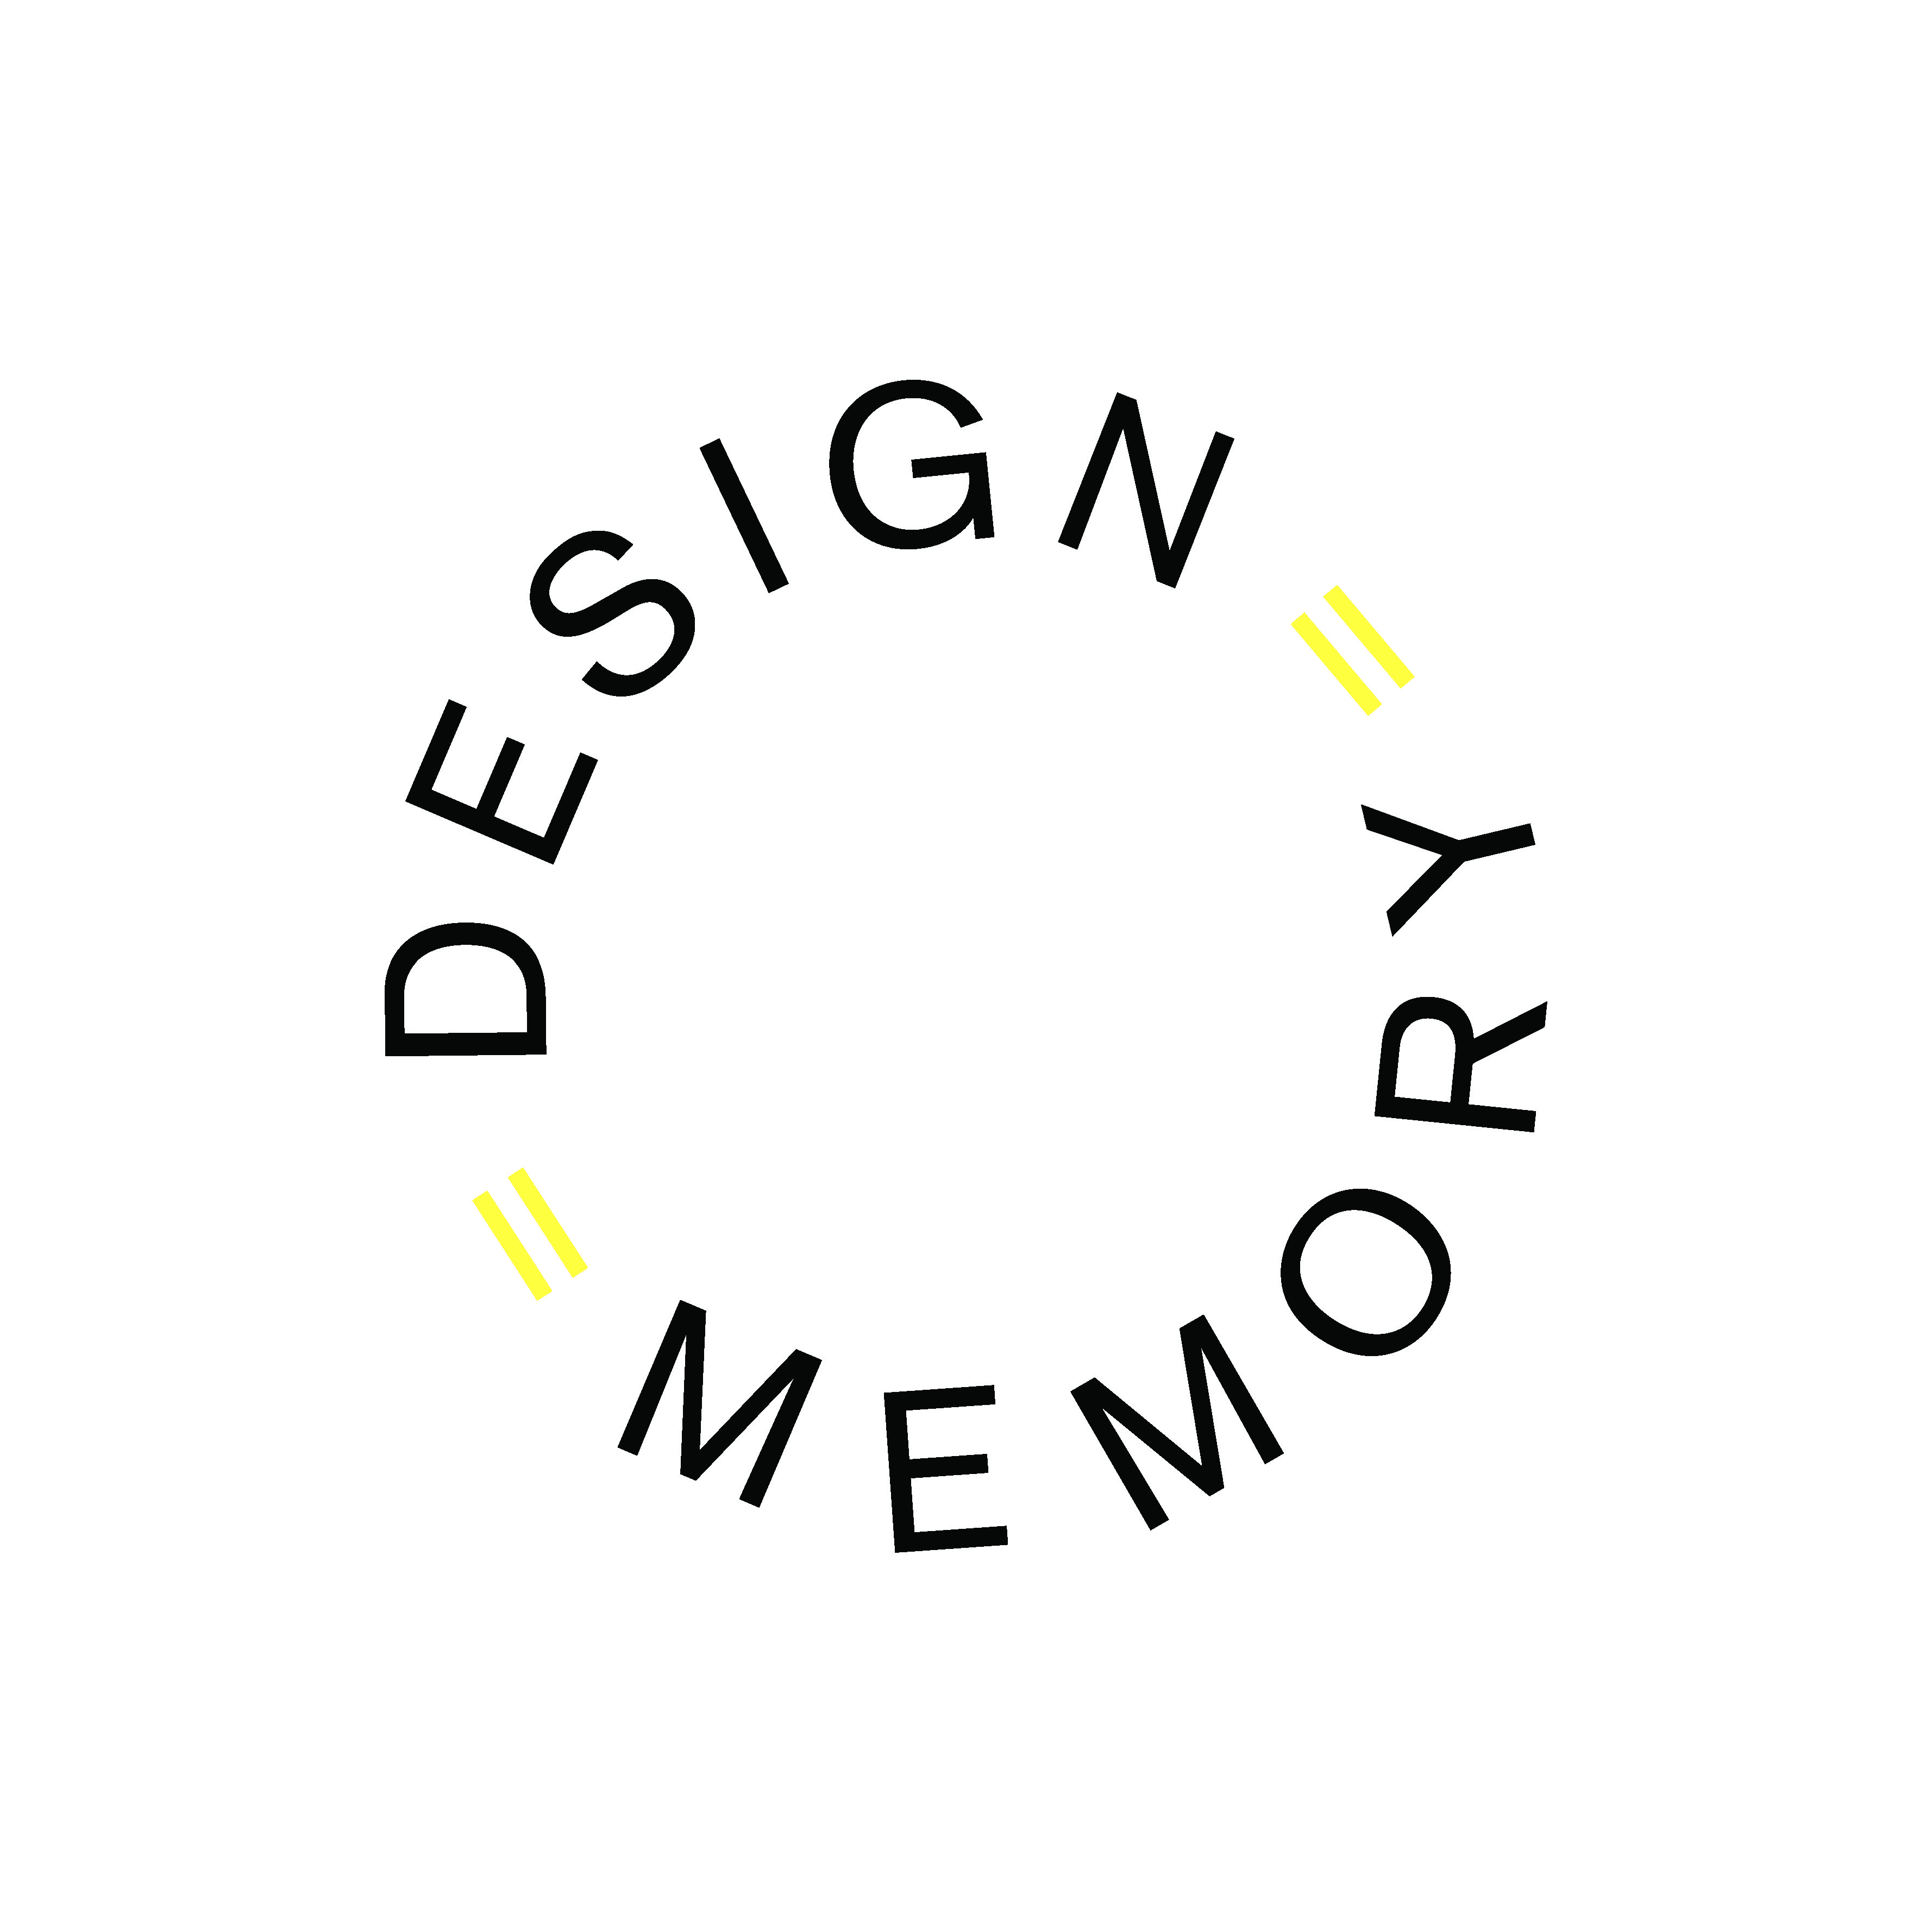 スウェーデン国立美術館での展覧会「DESIGN = MEMORY」のお知らせ。2月 